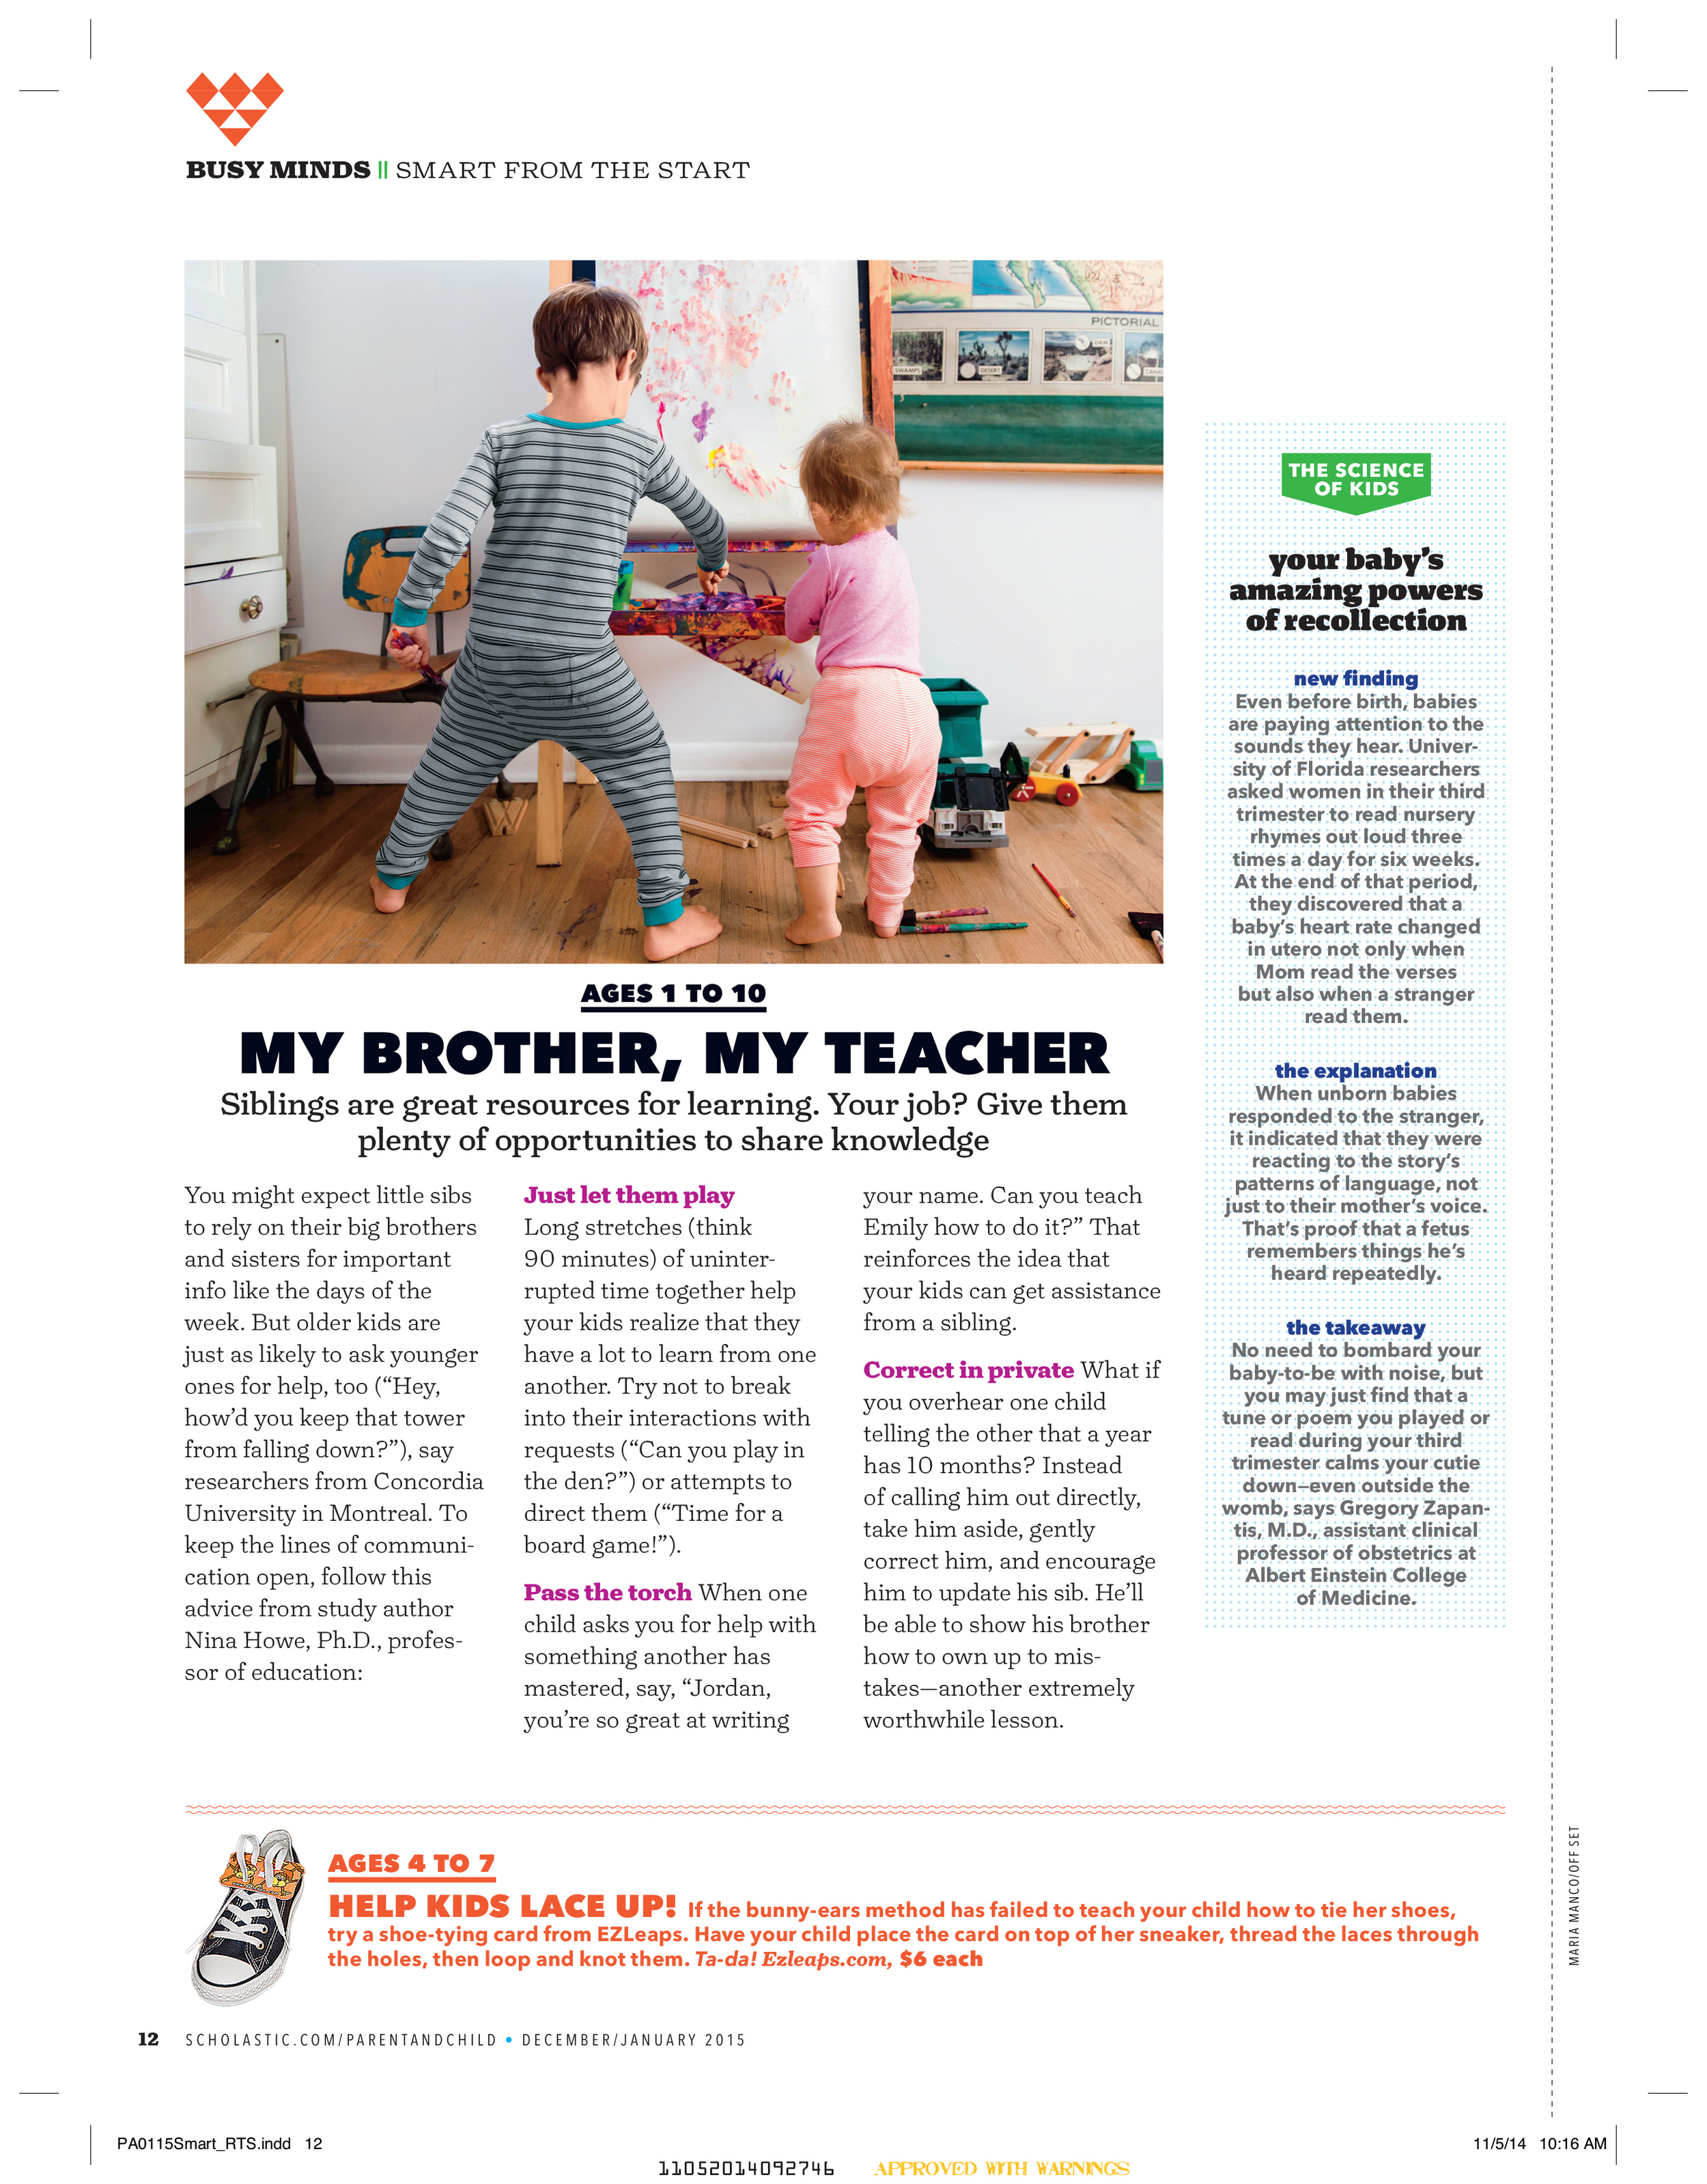 Scholastic Parent & Child Magazine Jan 2015